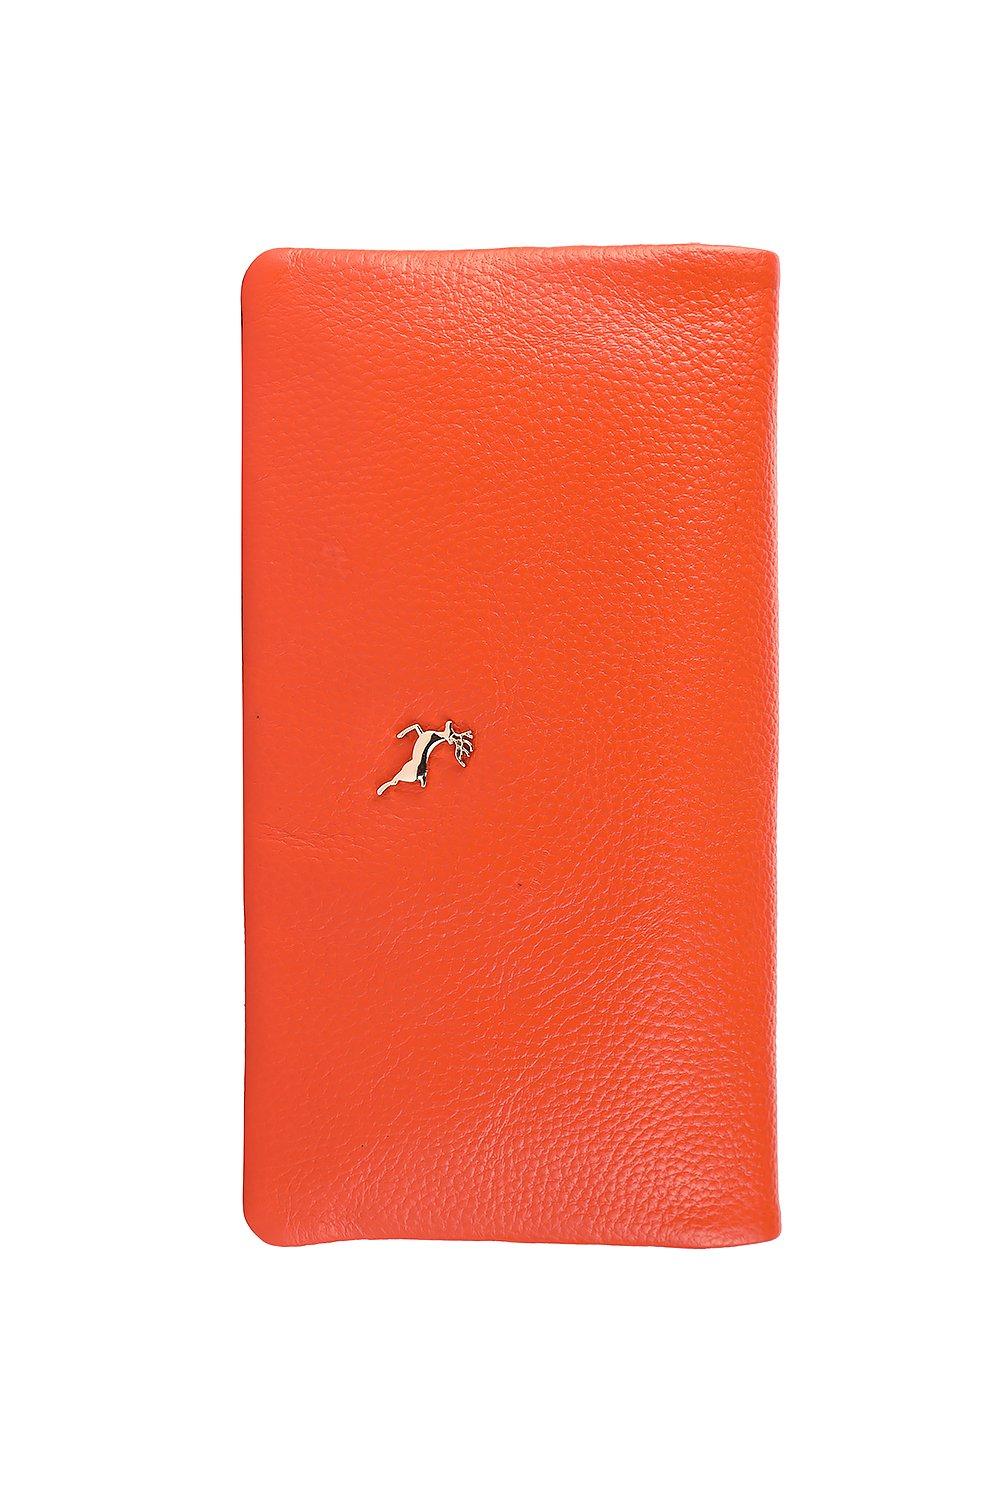 Большой кошелек для утренника из натуральной кожи «Liberty» Ashwood Leather, оранжевый